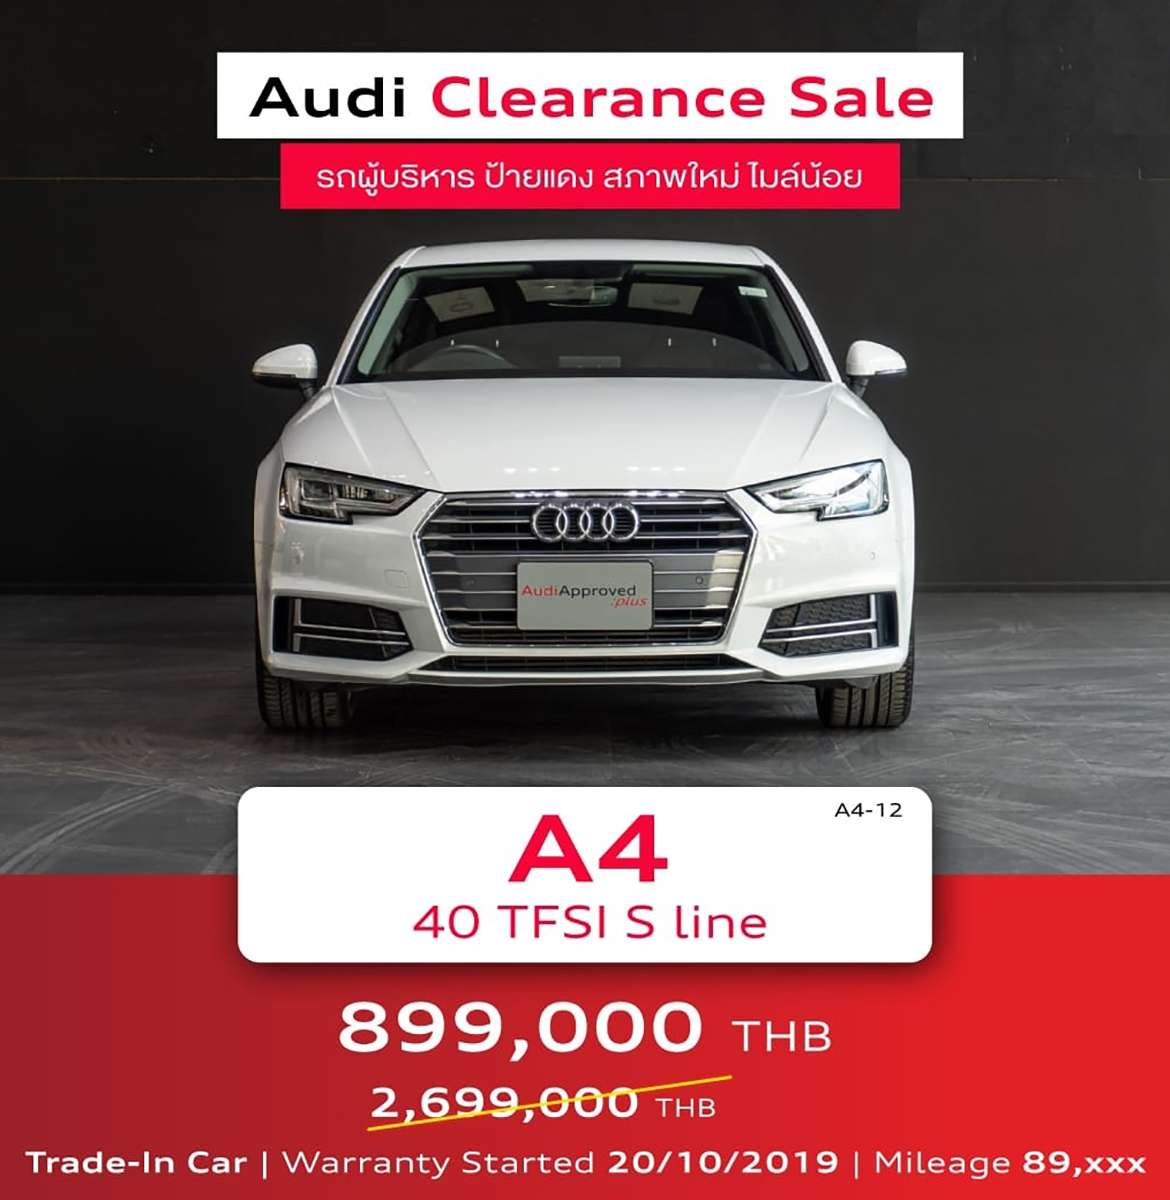 อยากได้อาวดี้ ต้องมางานนี้ “Audi Clearance Sale” 26-28 มกราคม ที่ Audi Centre Thailand, อยากได้อาวดี้ ต้องมางานนี้ “Audi Clearance Sale”26-28 มกราคม ที่ Audi Centre Thailand